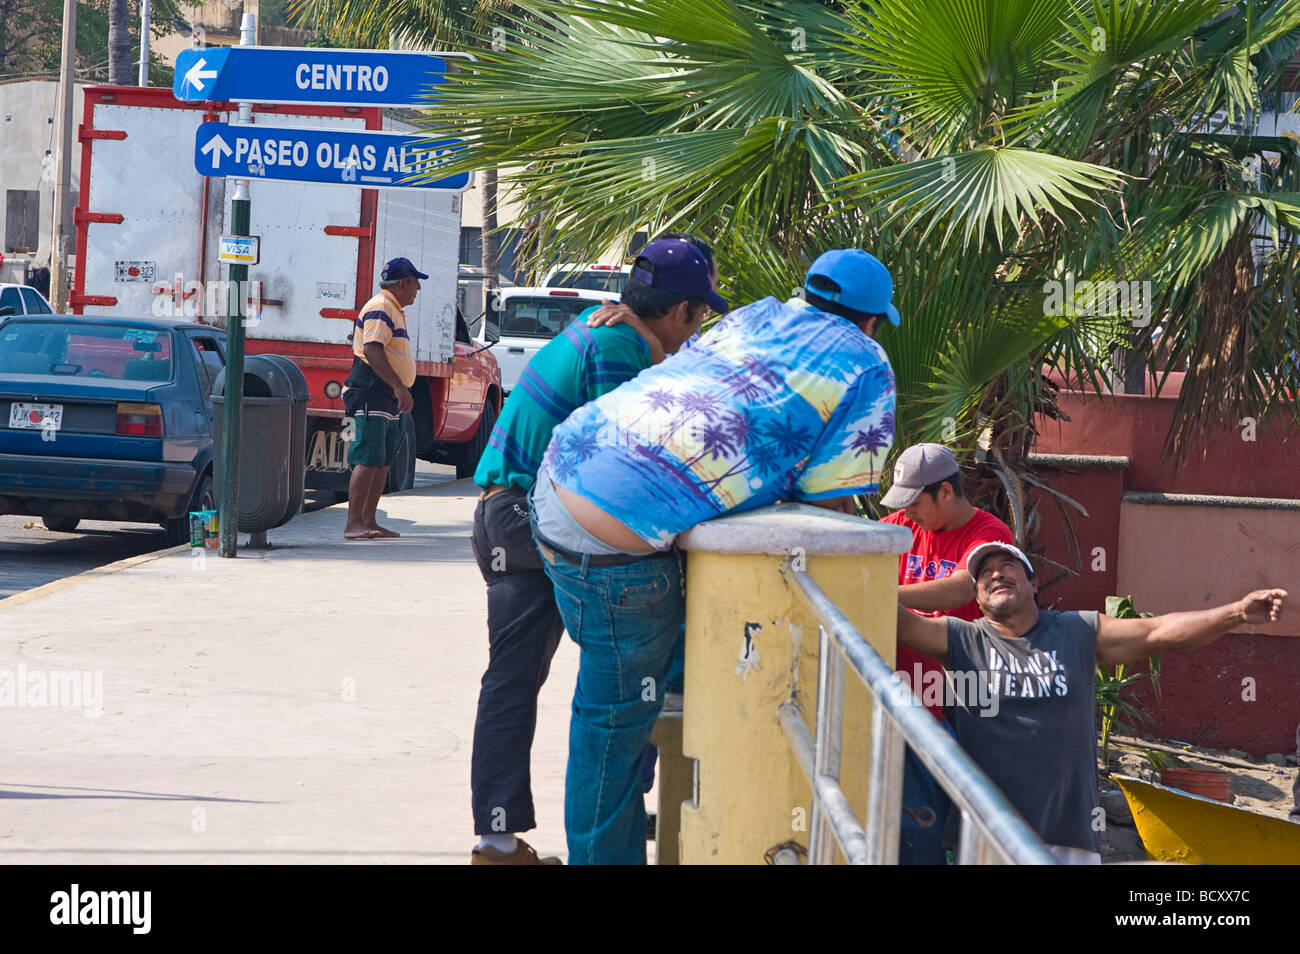 Scena di strada vicino a dove i pescatori di pesce pulito ogni mattina sul Malecon, la famosa striscia di spiaggia di Mazatlan Messico Foto Stock